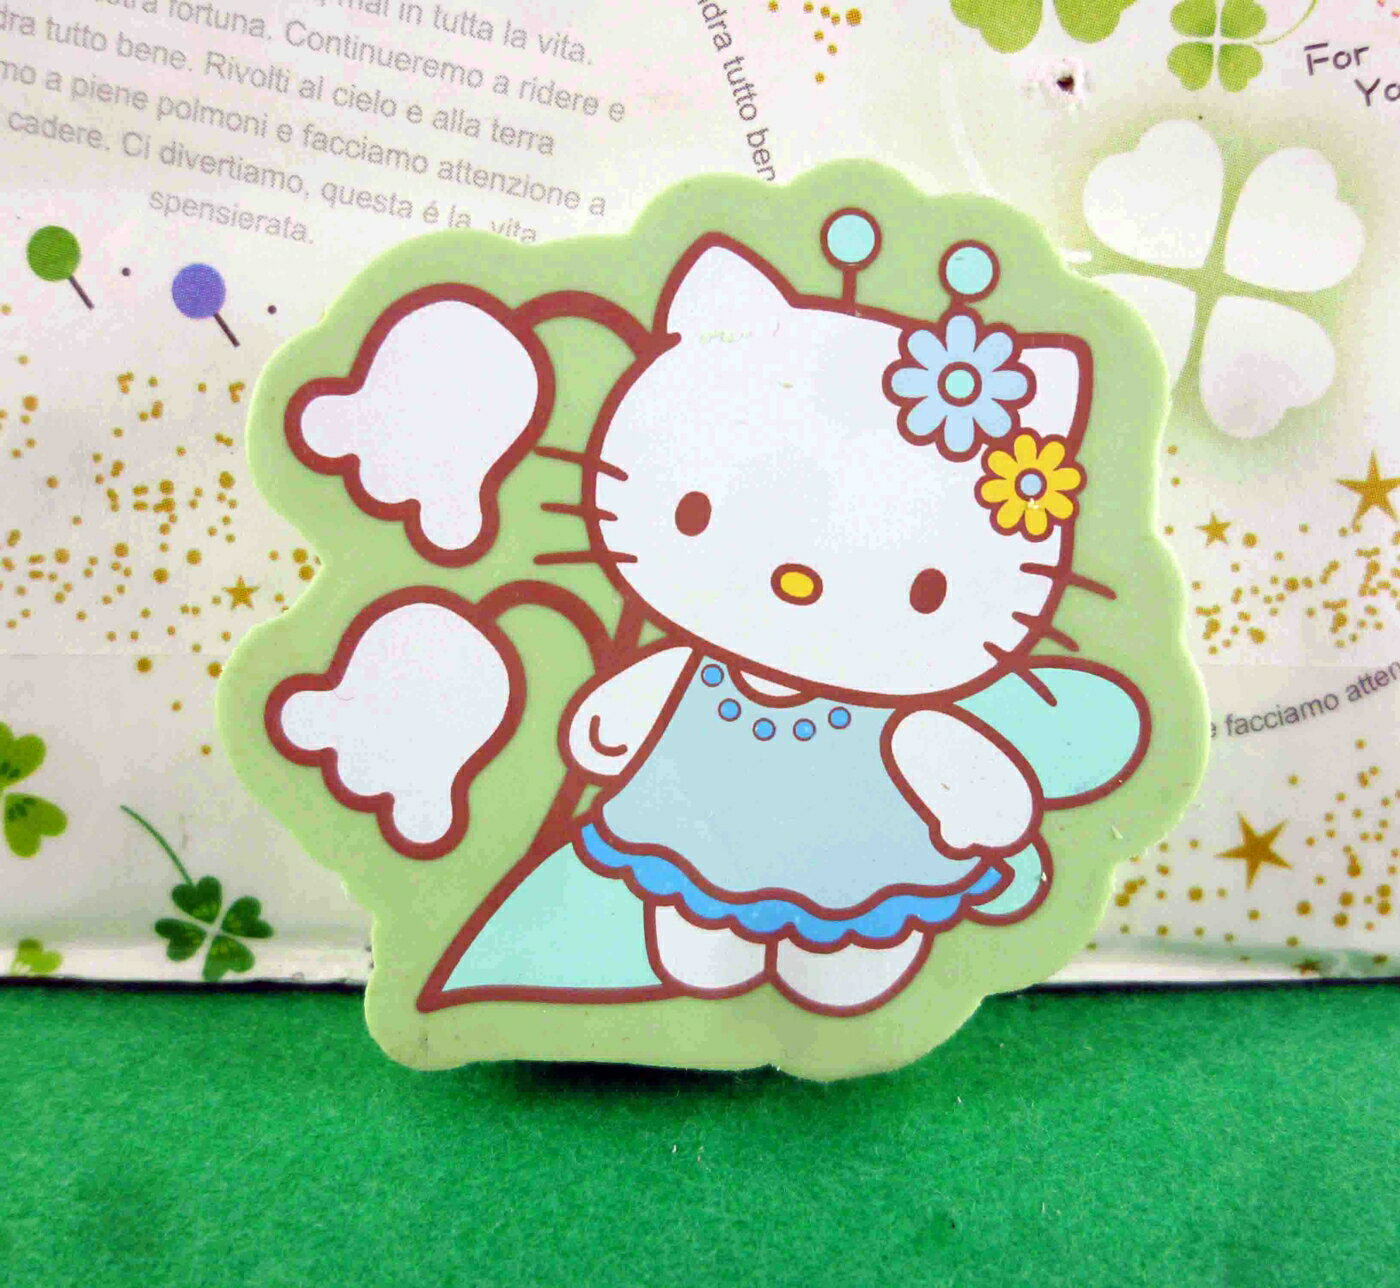 【震撼精品百貨】Hello Kitty 凱蒂貓 造型橡皮擦-綠鈴蘭 震撼日式精品百貨